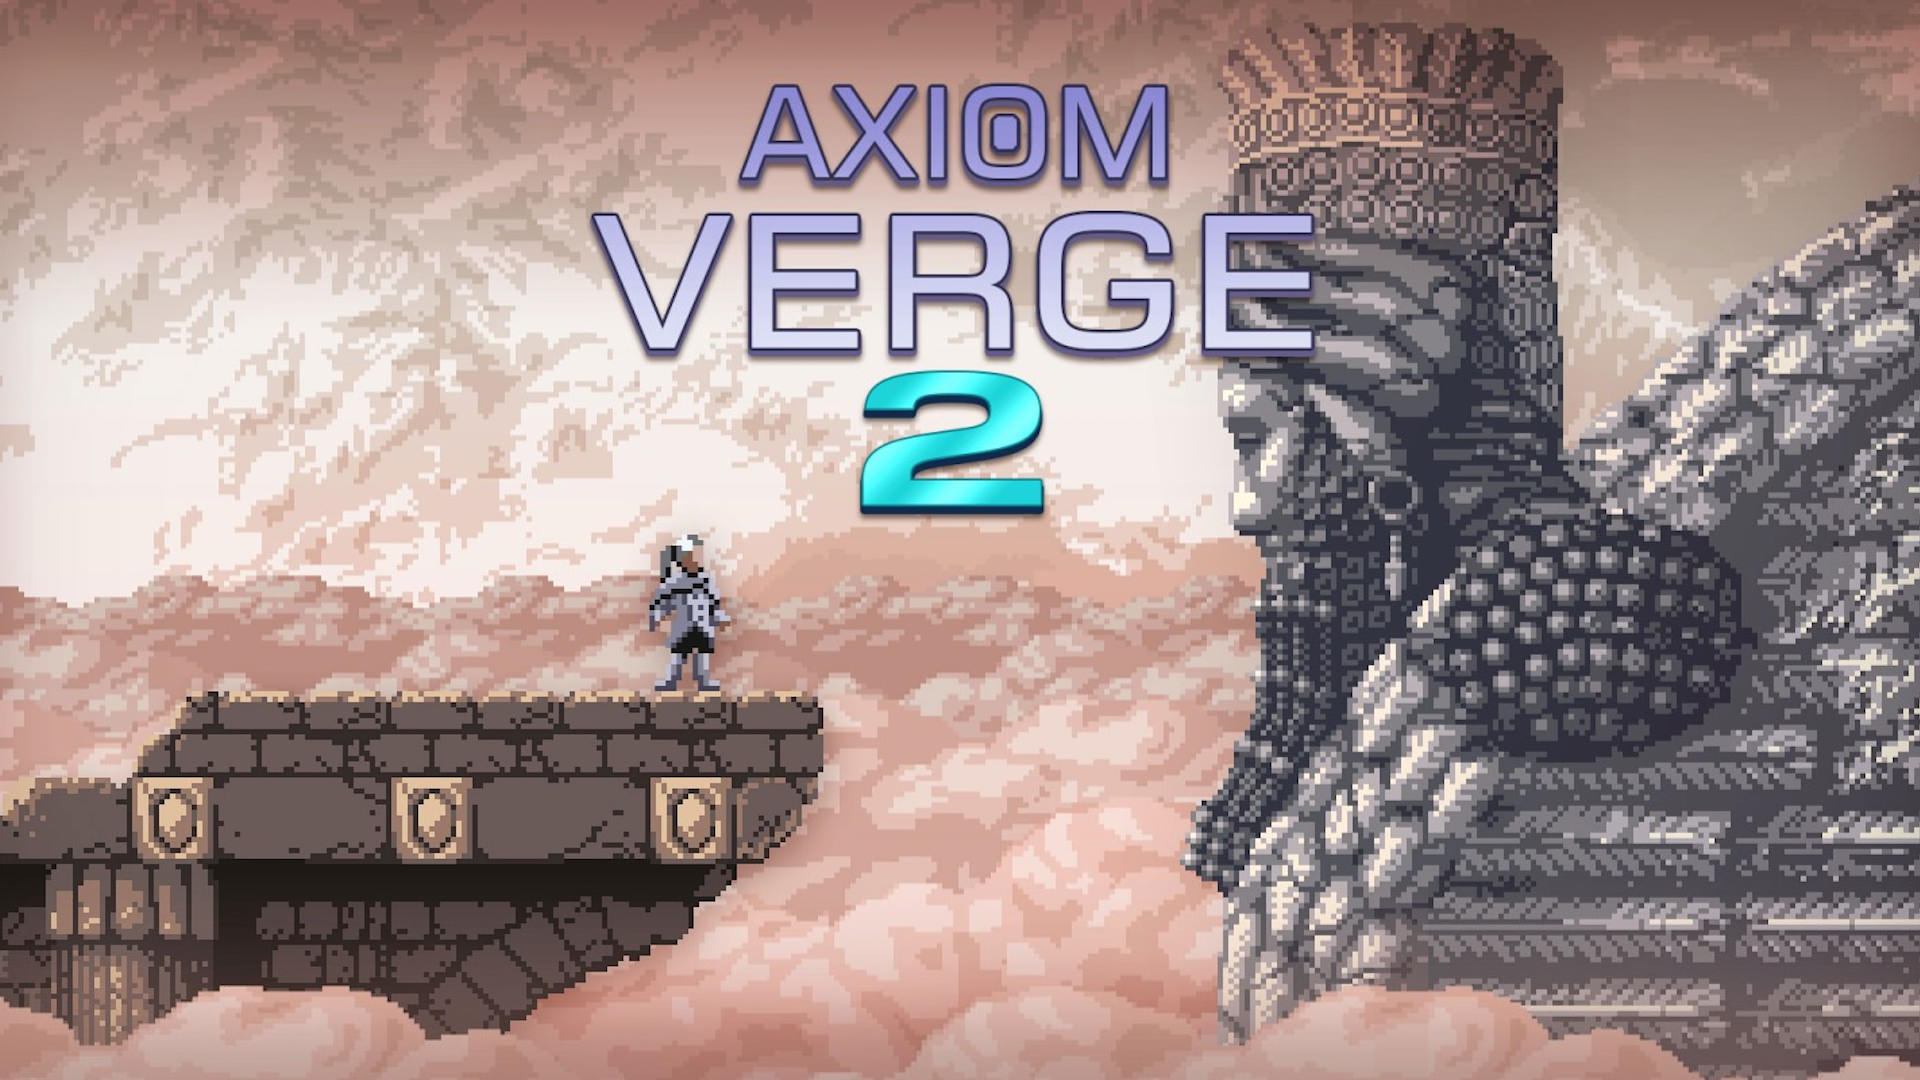 تاخیر دوباره در عرضه بازی Axiom Verge 2